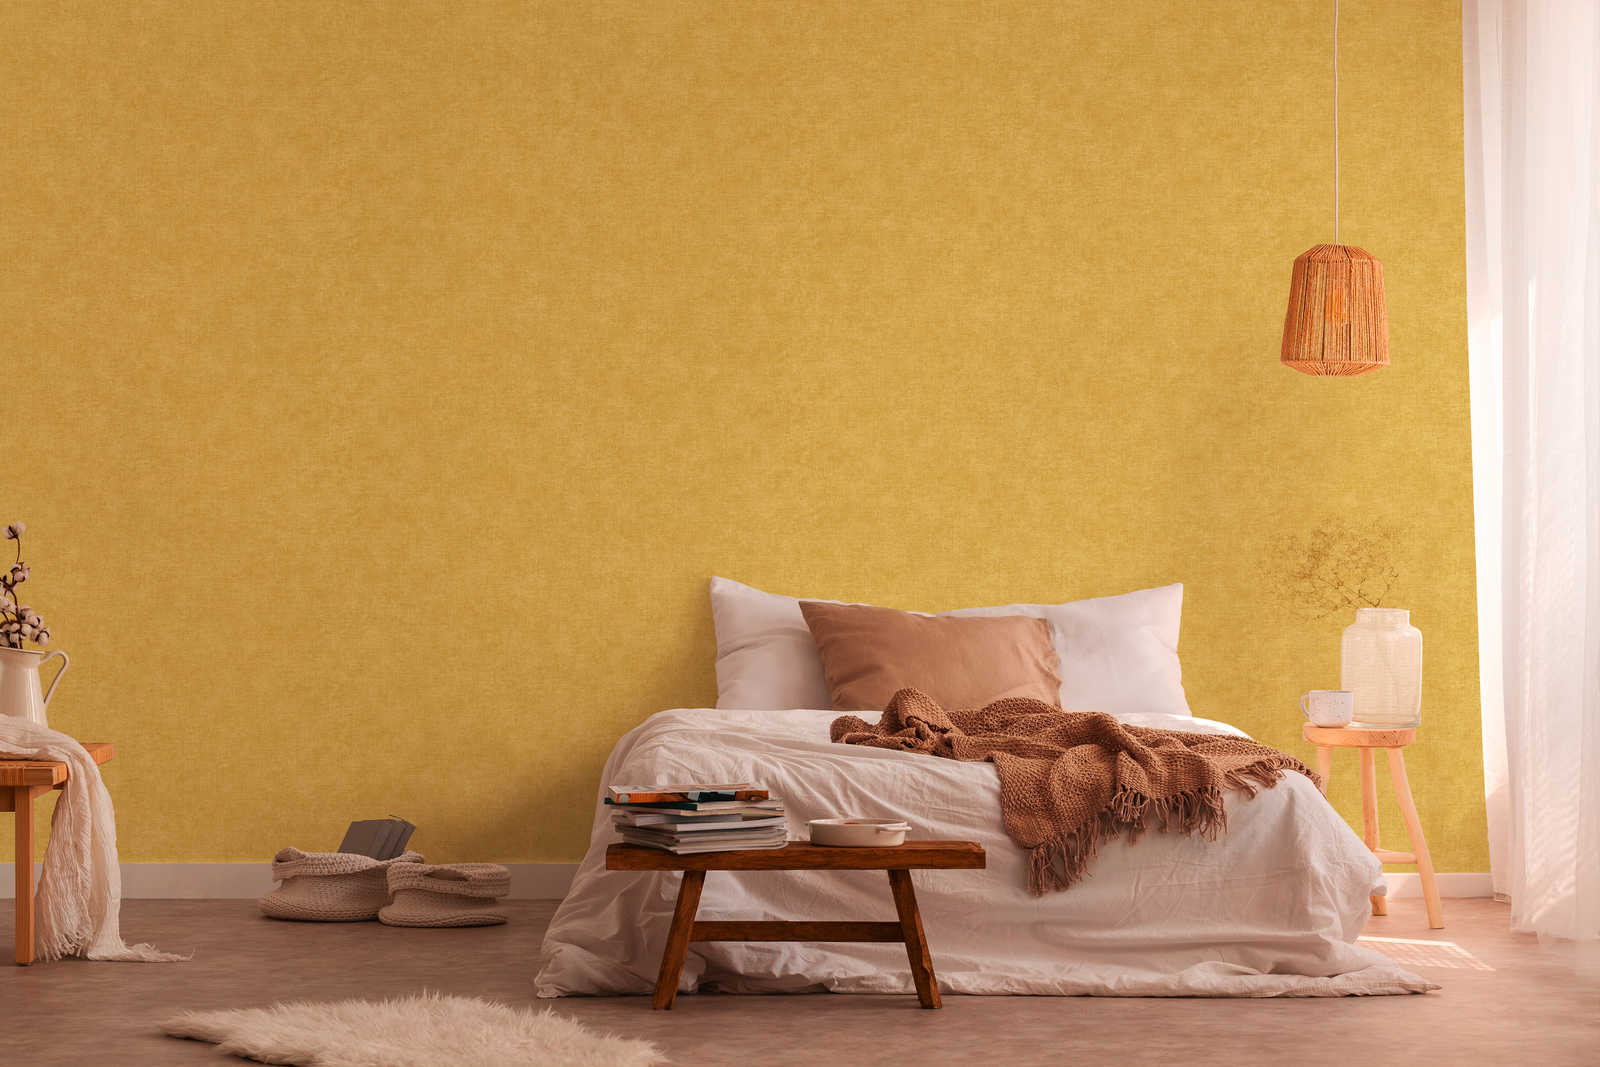             Papier peint jaune moutarde, mat & avec motifs structurés
        